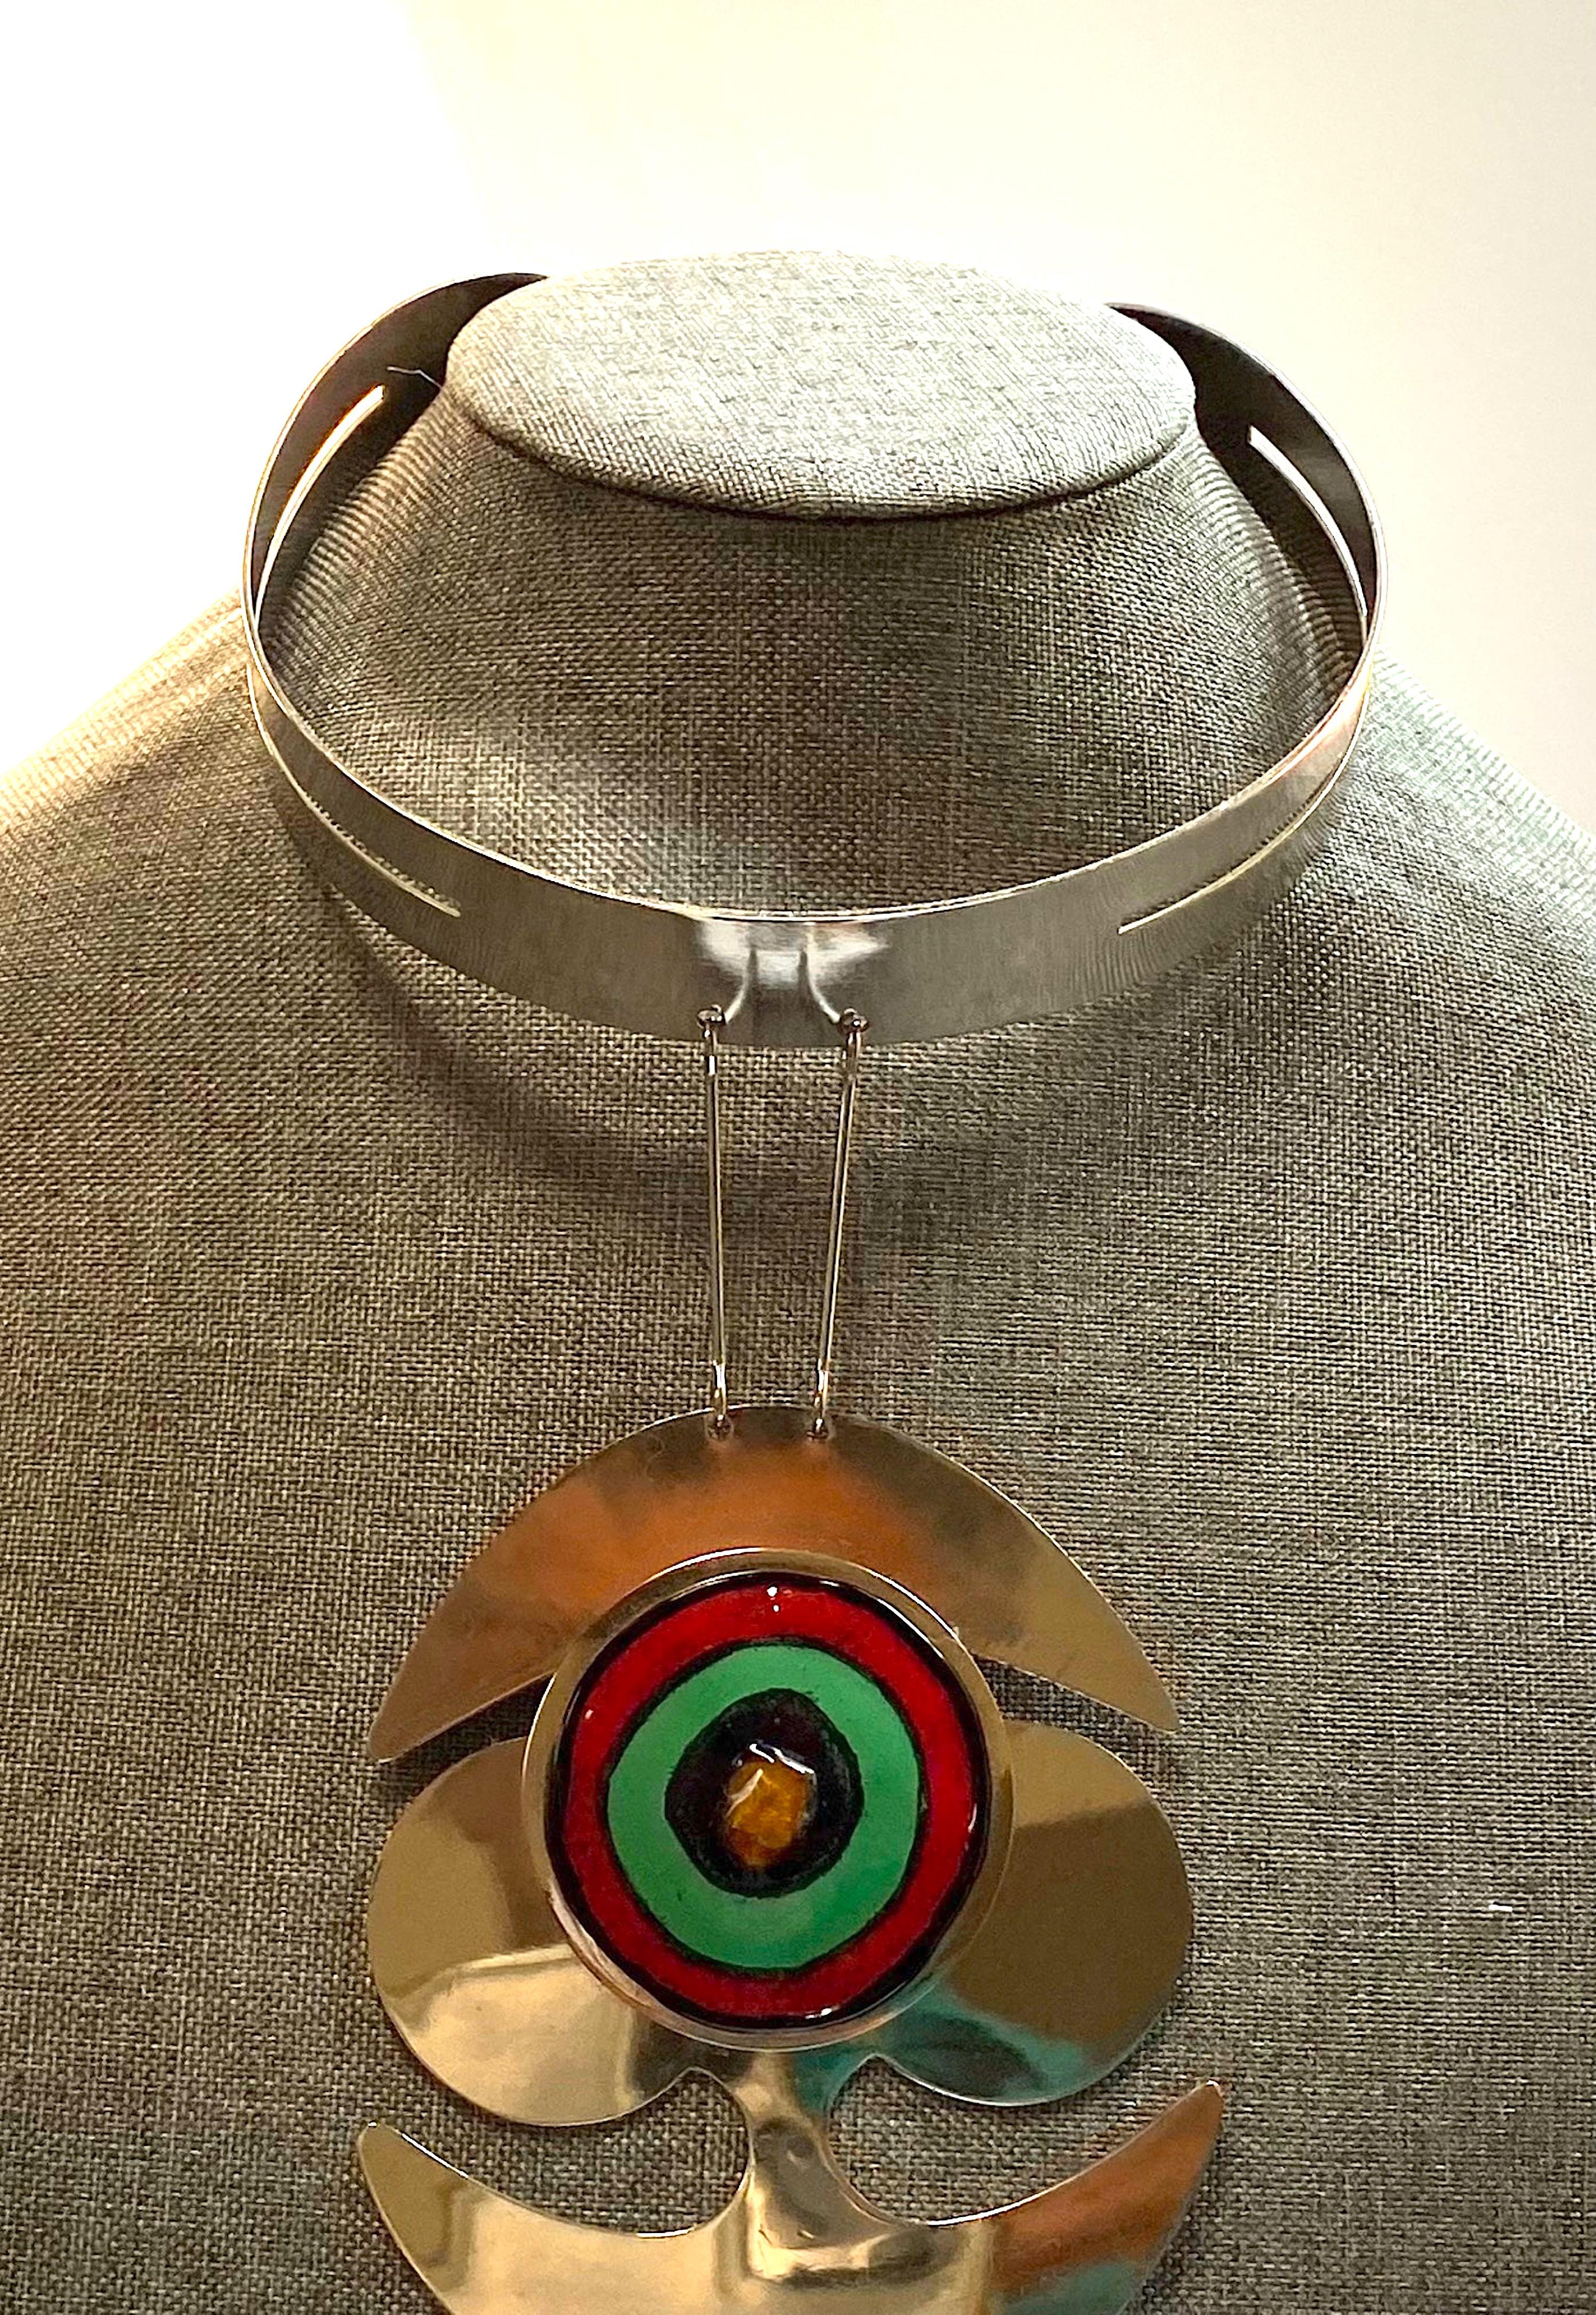 Pierre Cardin 1960s Space Age Mod Enamel & Chrome Necklace 10